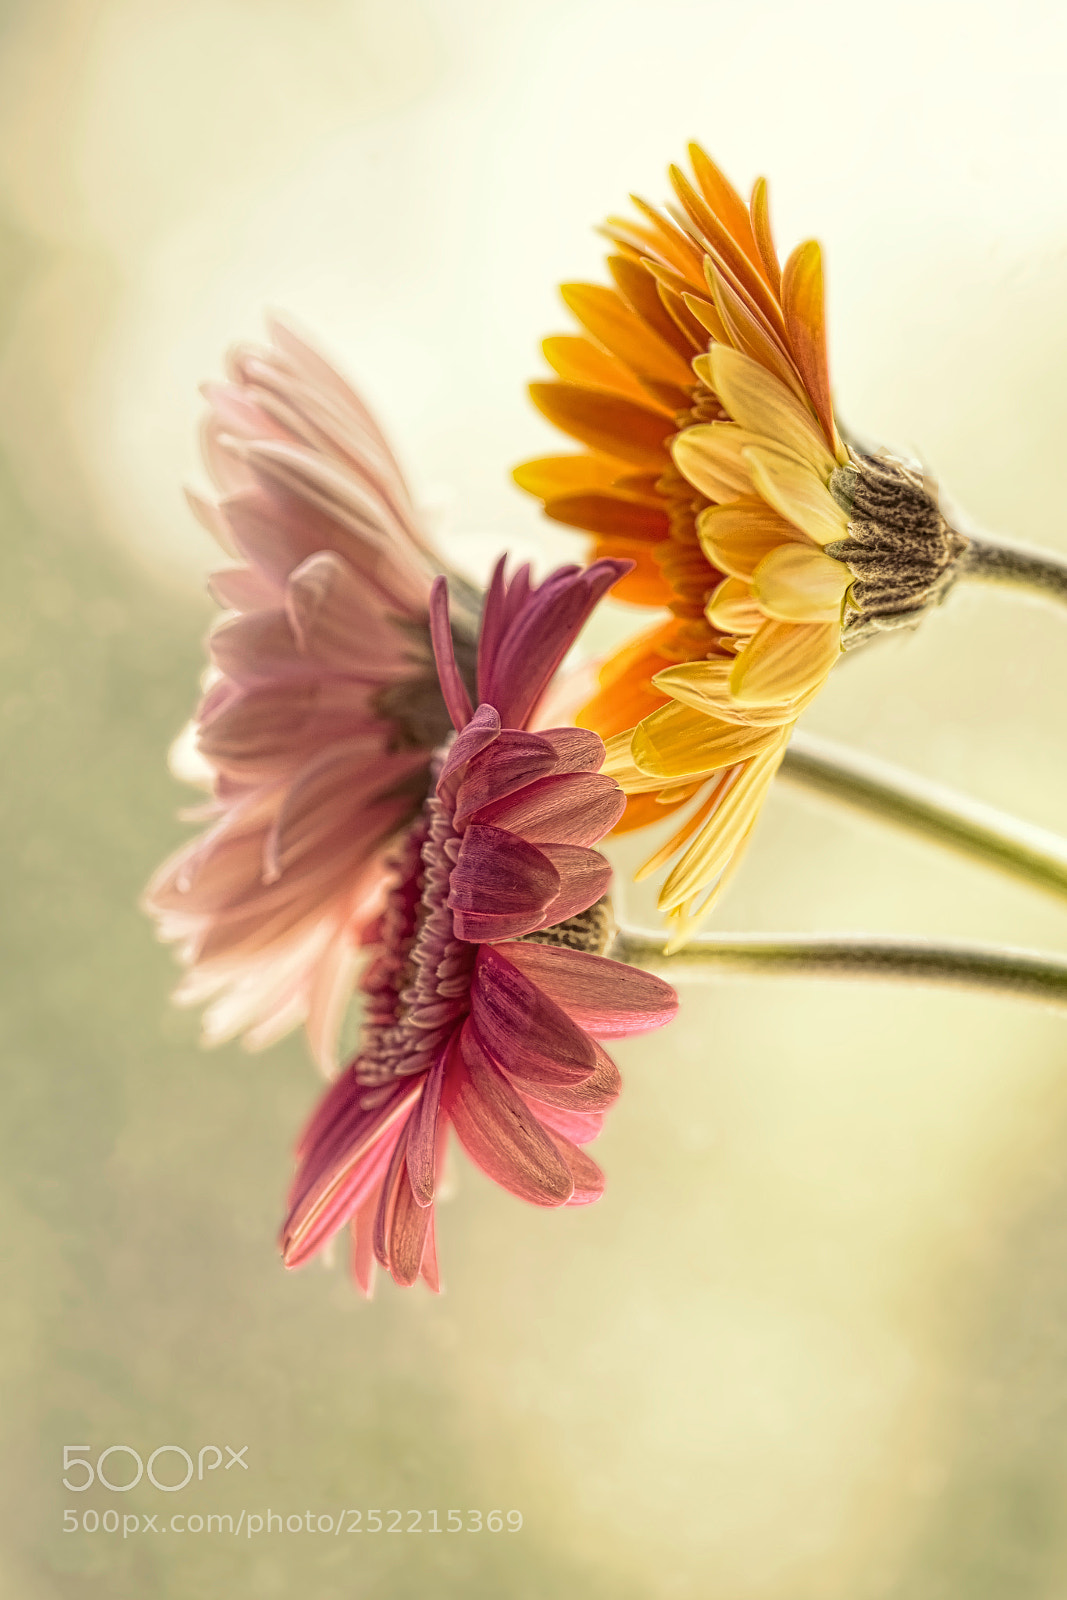 Nikon D7100 sample photo. Gerbera daisies photography